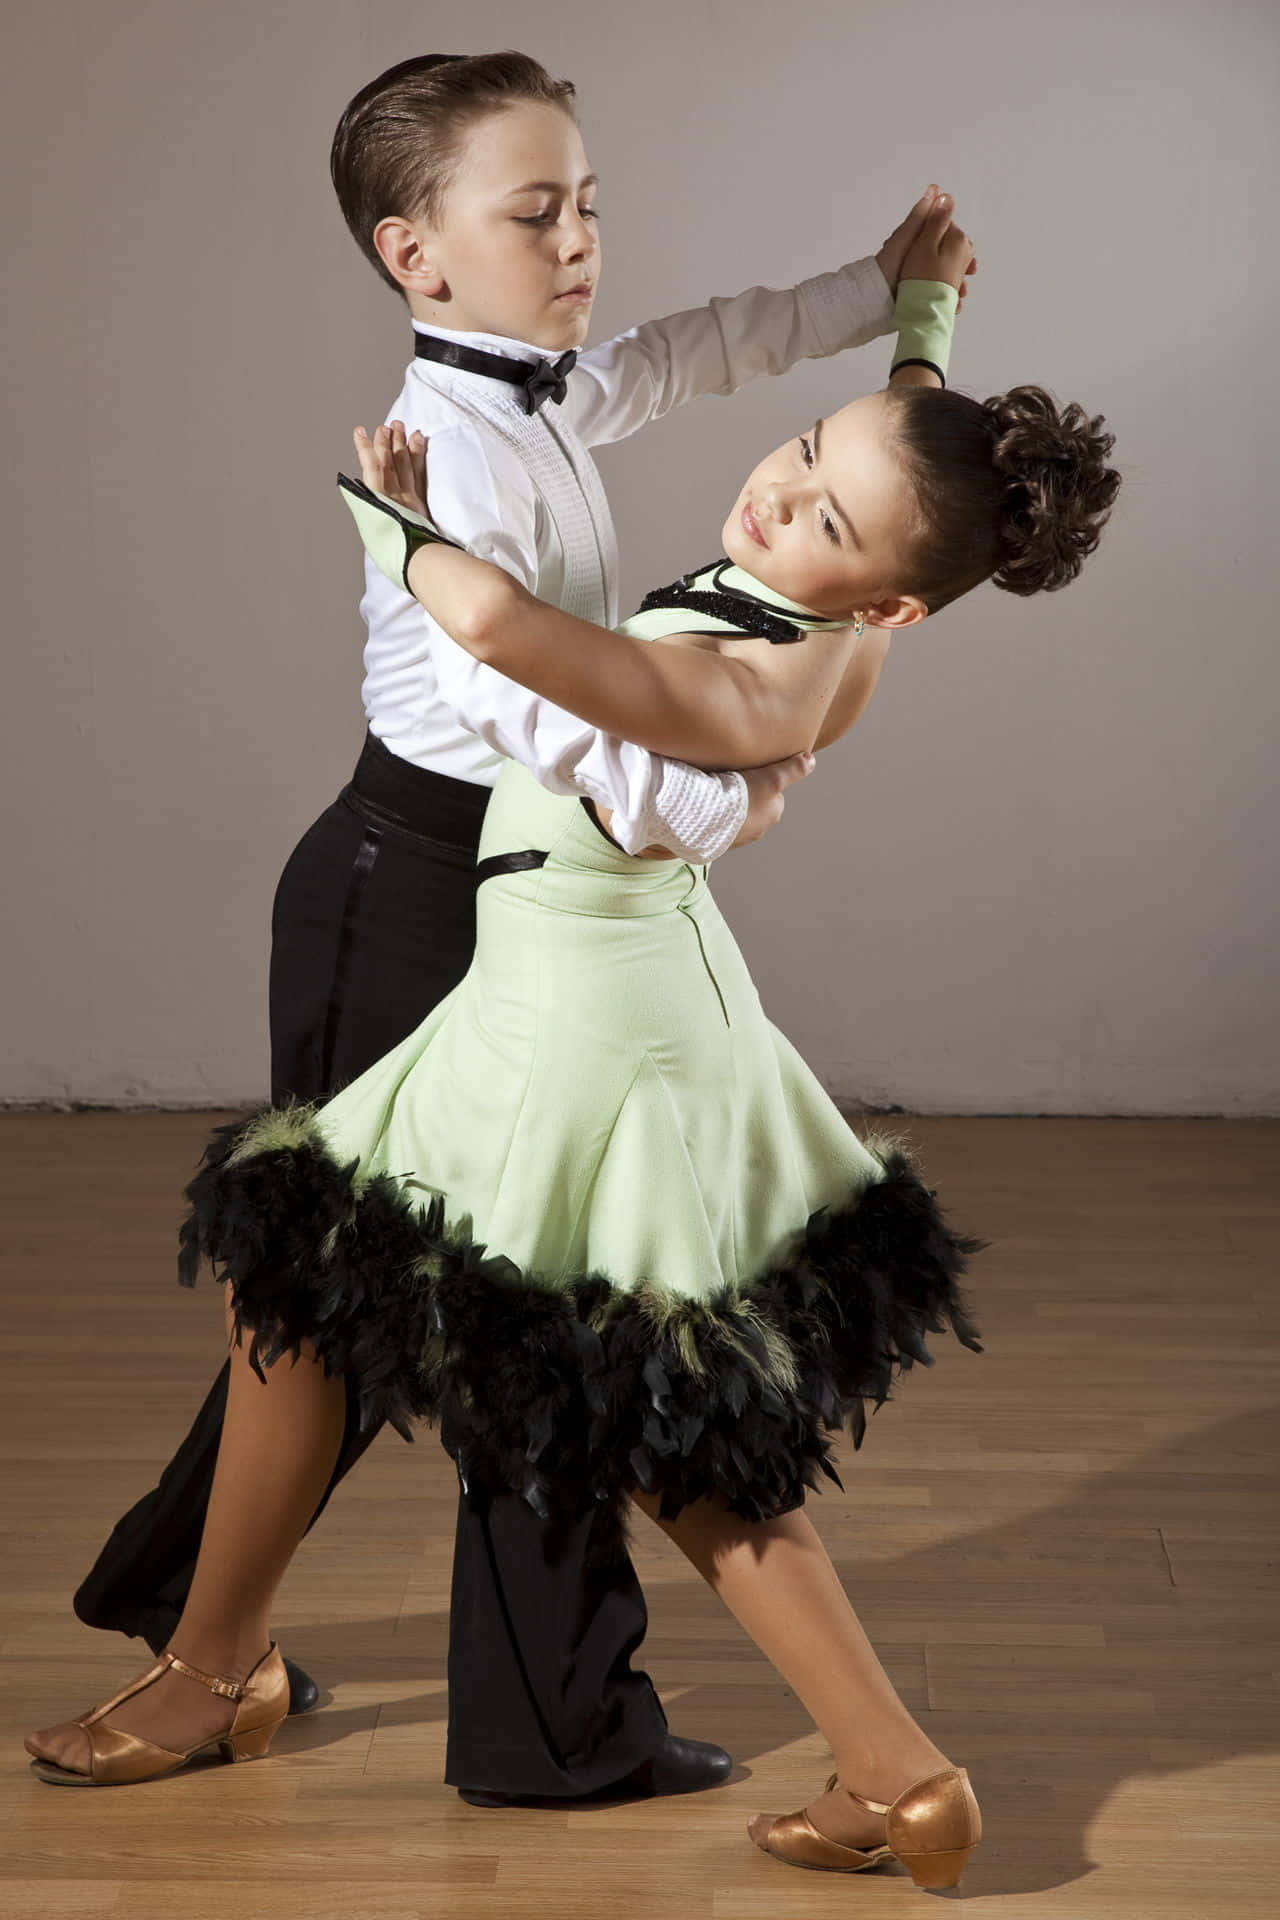 Einjunger Junge Und Ein Mädchen Tanzen In Einem Tanzstudio.